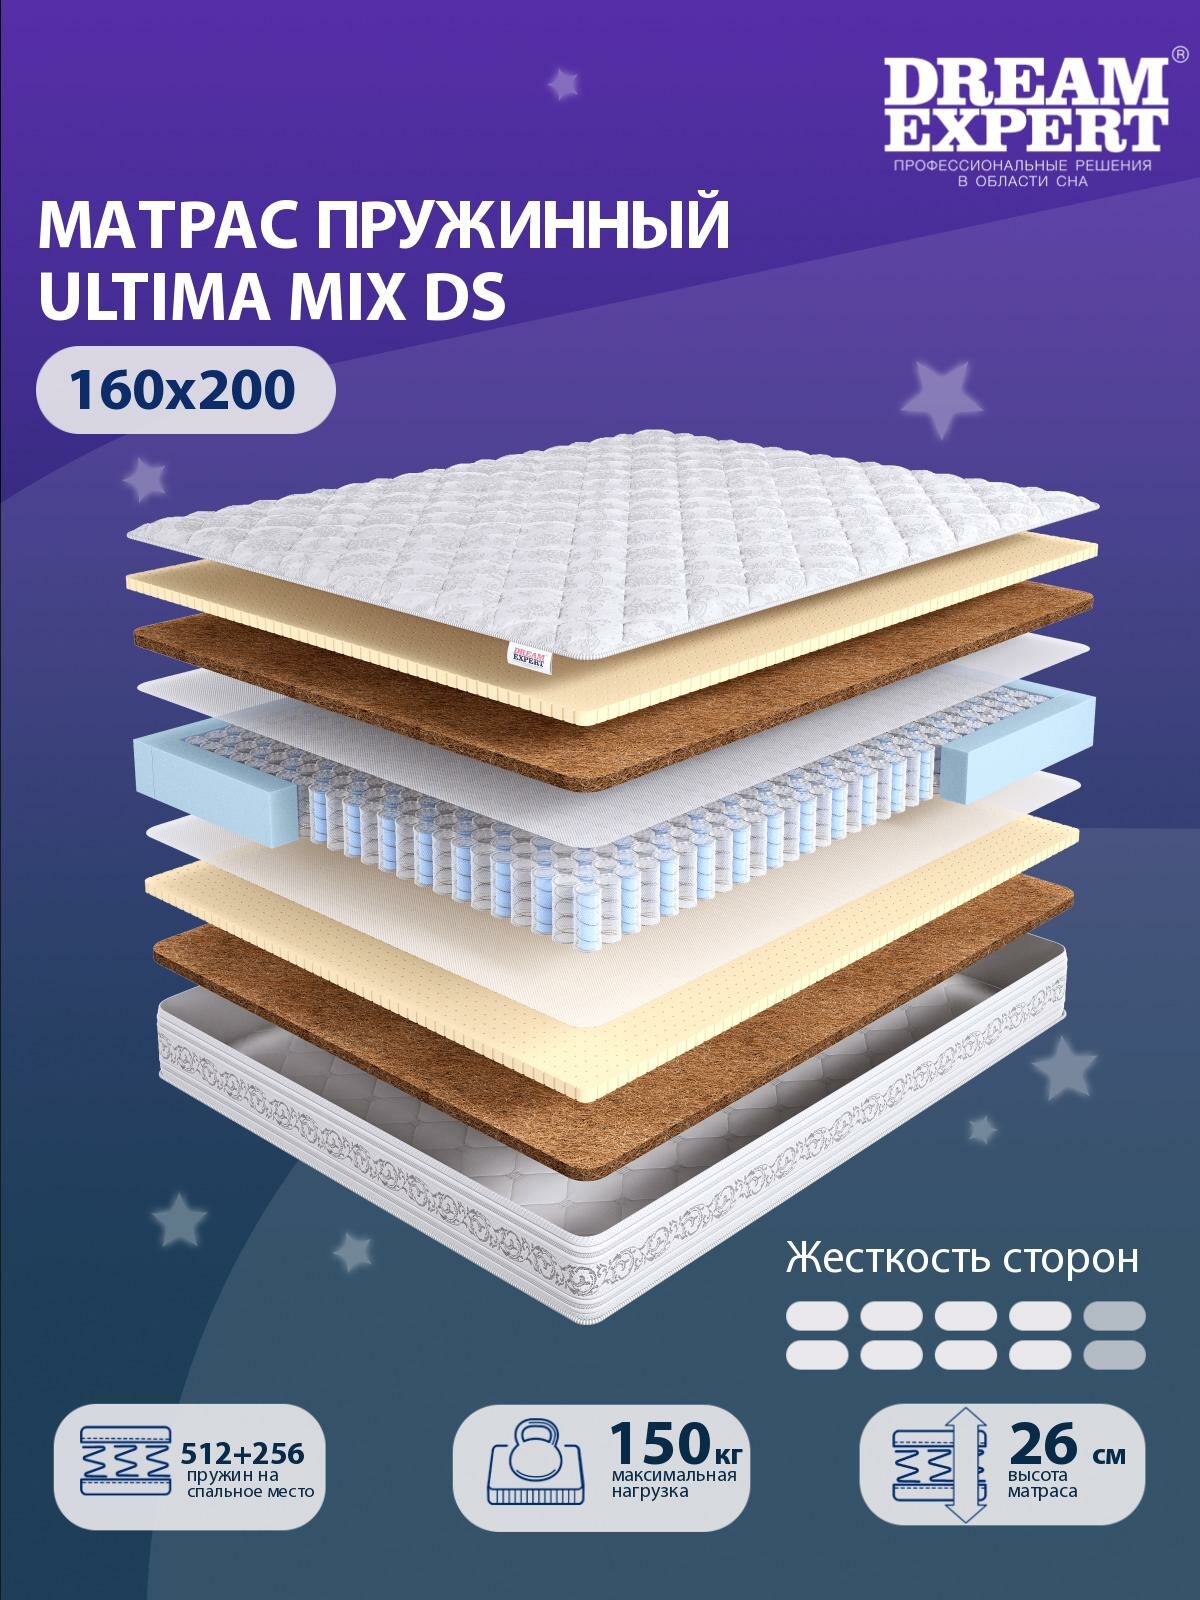 Матрас DreamExpert Ultima MIX DS выше средней жесткости, двуспальный, независимый пружинный блок, на кровать 160x200